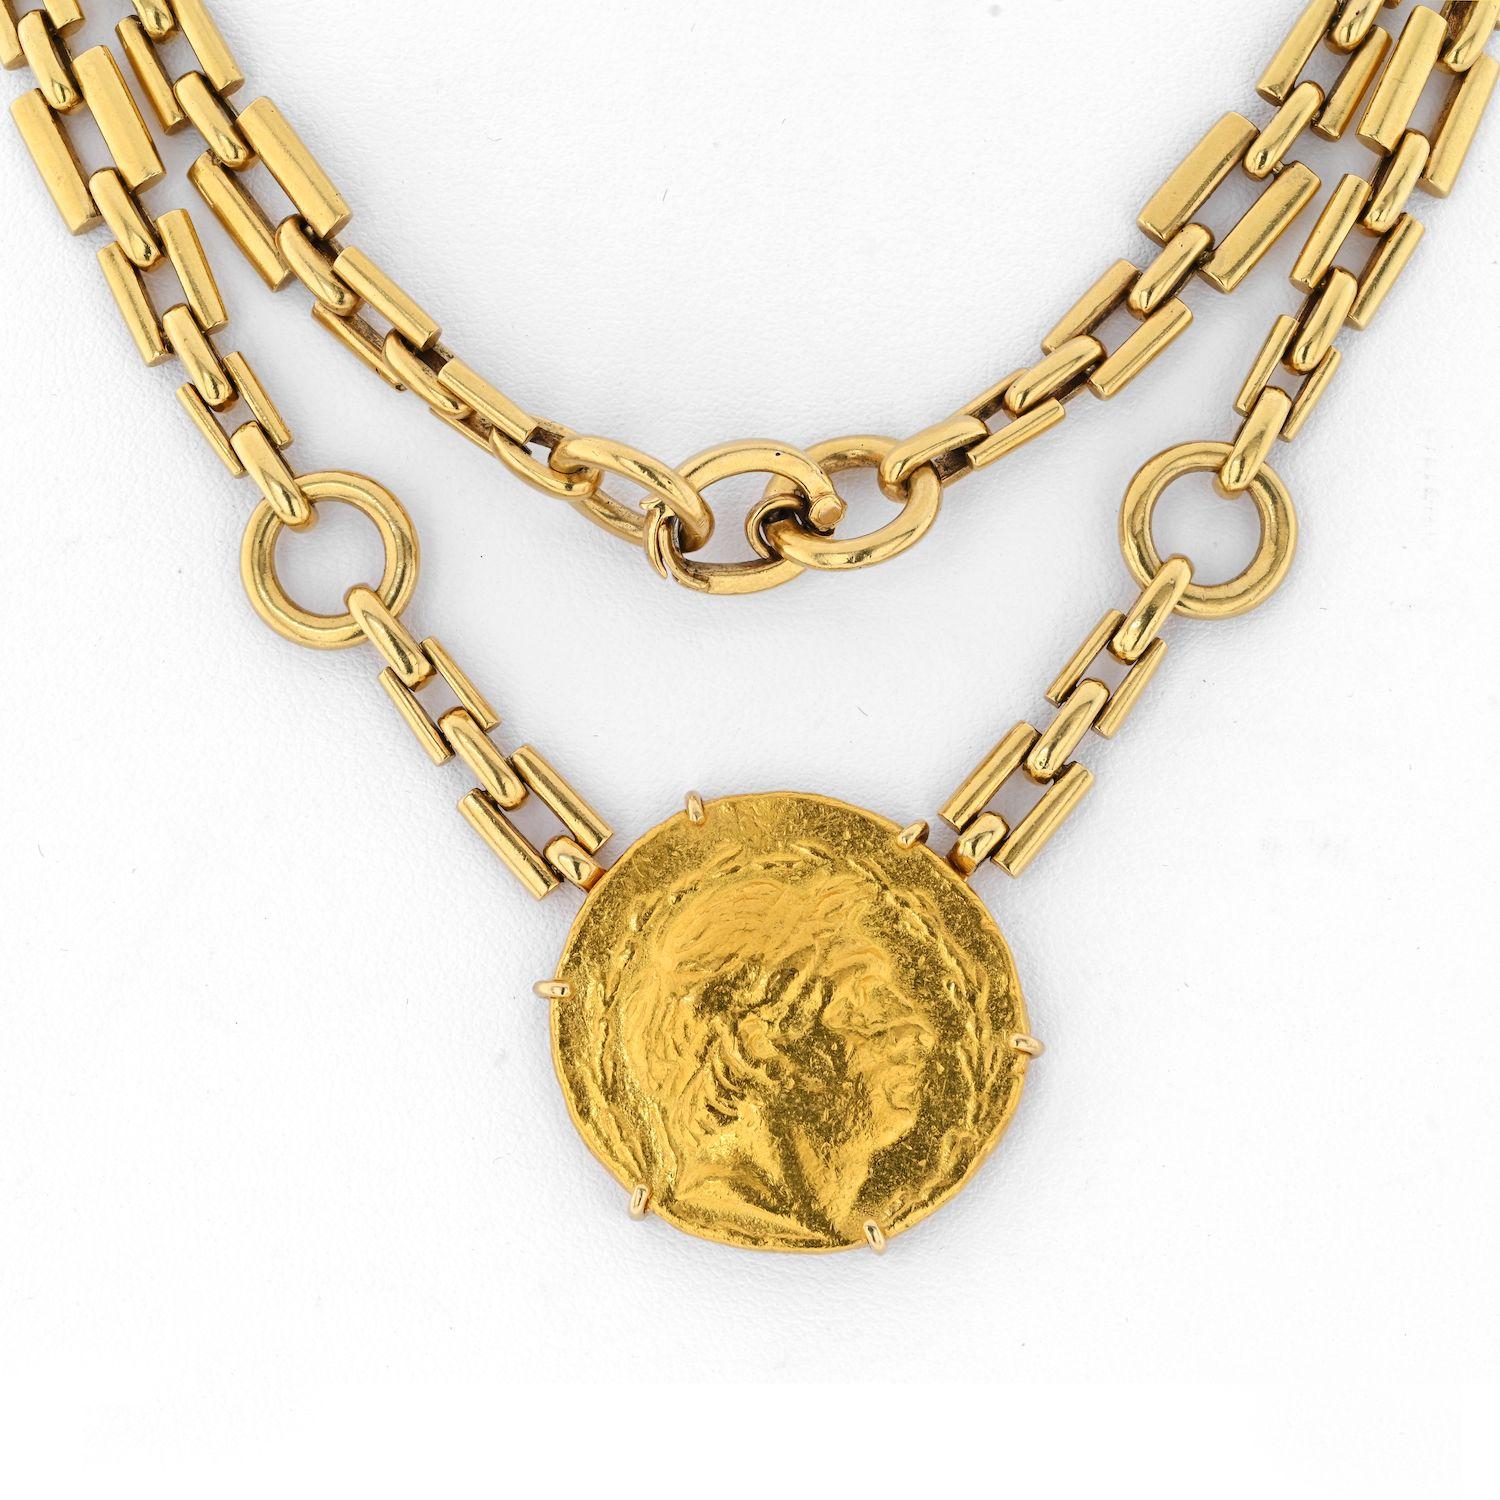 Fabriqué avec d'anciennes pièces d'or grecques, une grande au centre et quatre petites dans la chaîne, ce bijou David Webb est sûr de devenir votre favori dès que vous le portez. 
Fabriqué en or jaune 18 carats, le collier à chaîne mesure 31 pouces